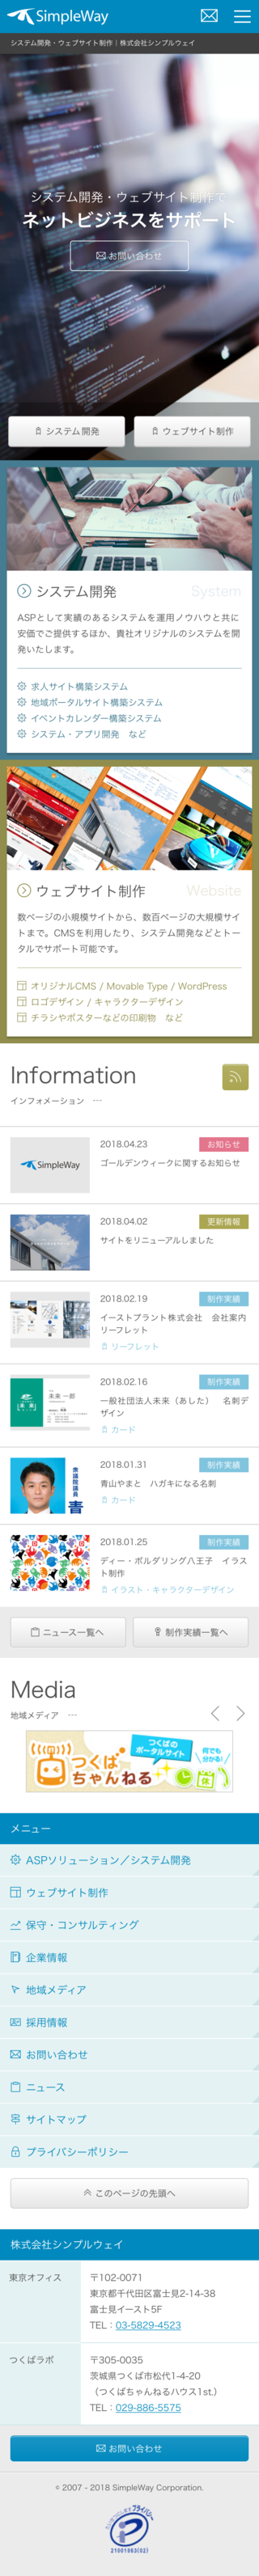 株式会社シンプルウェイのスマートフォン画面